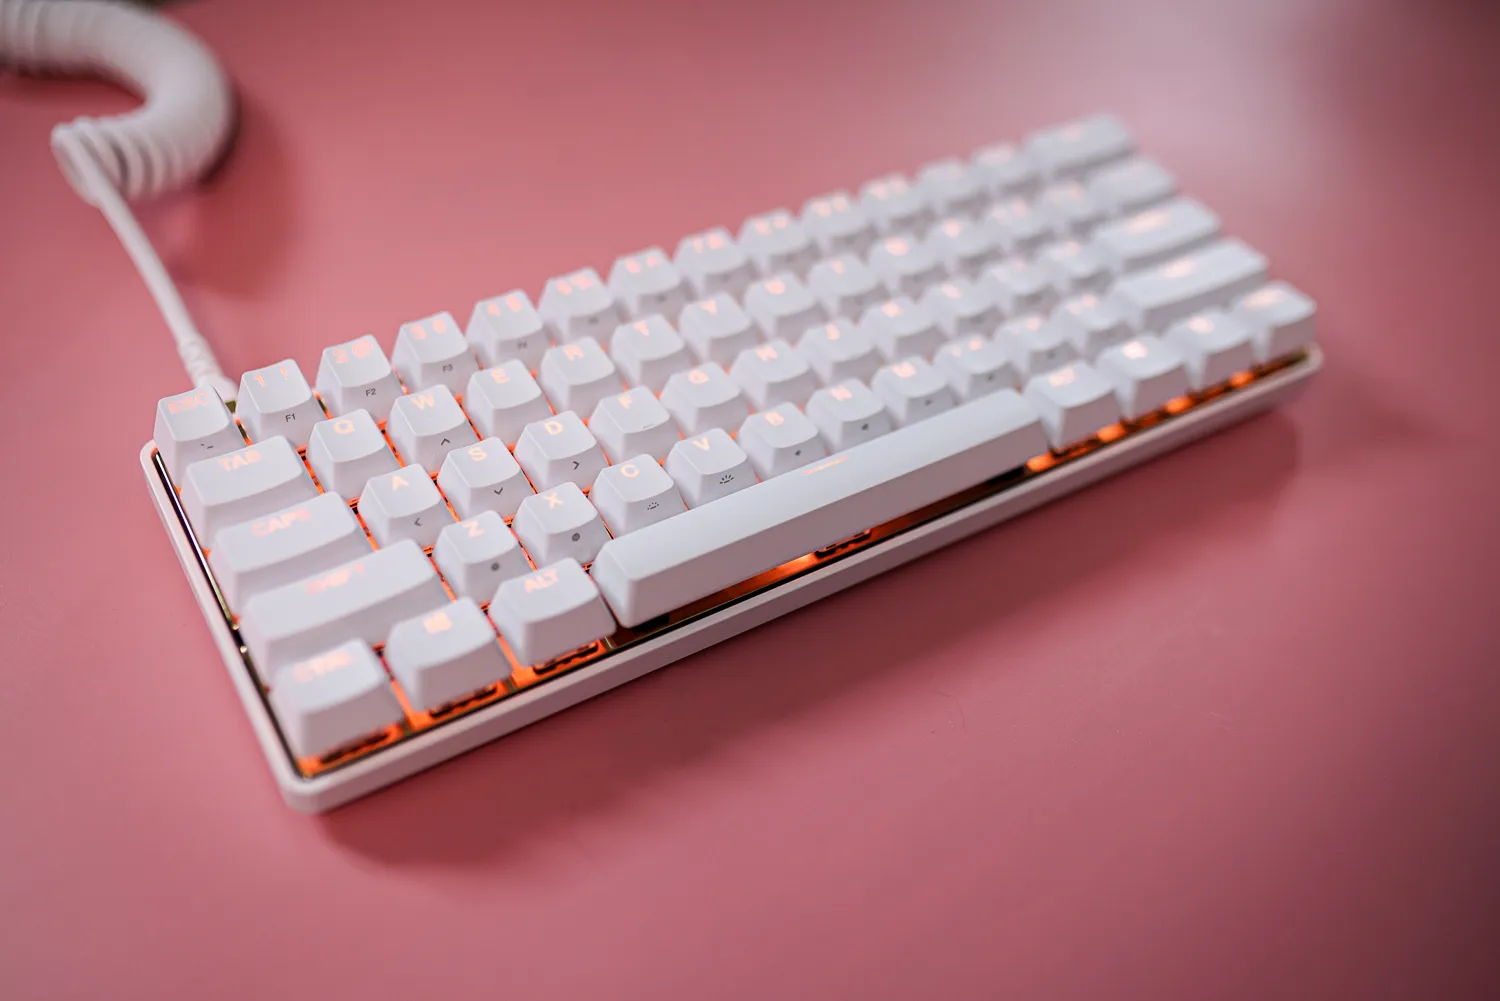 La tastiera Steelseries White Gold su uno sfondo rosa.